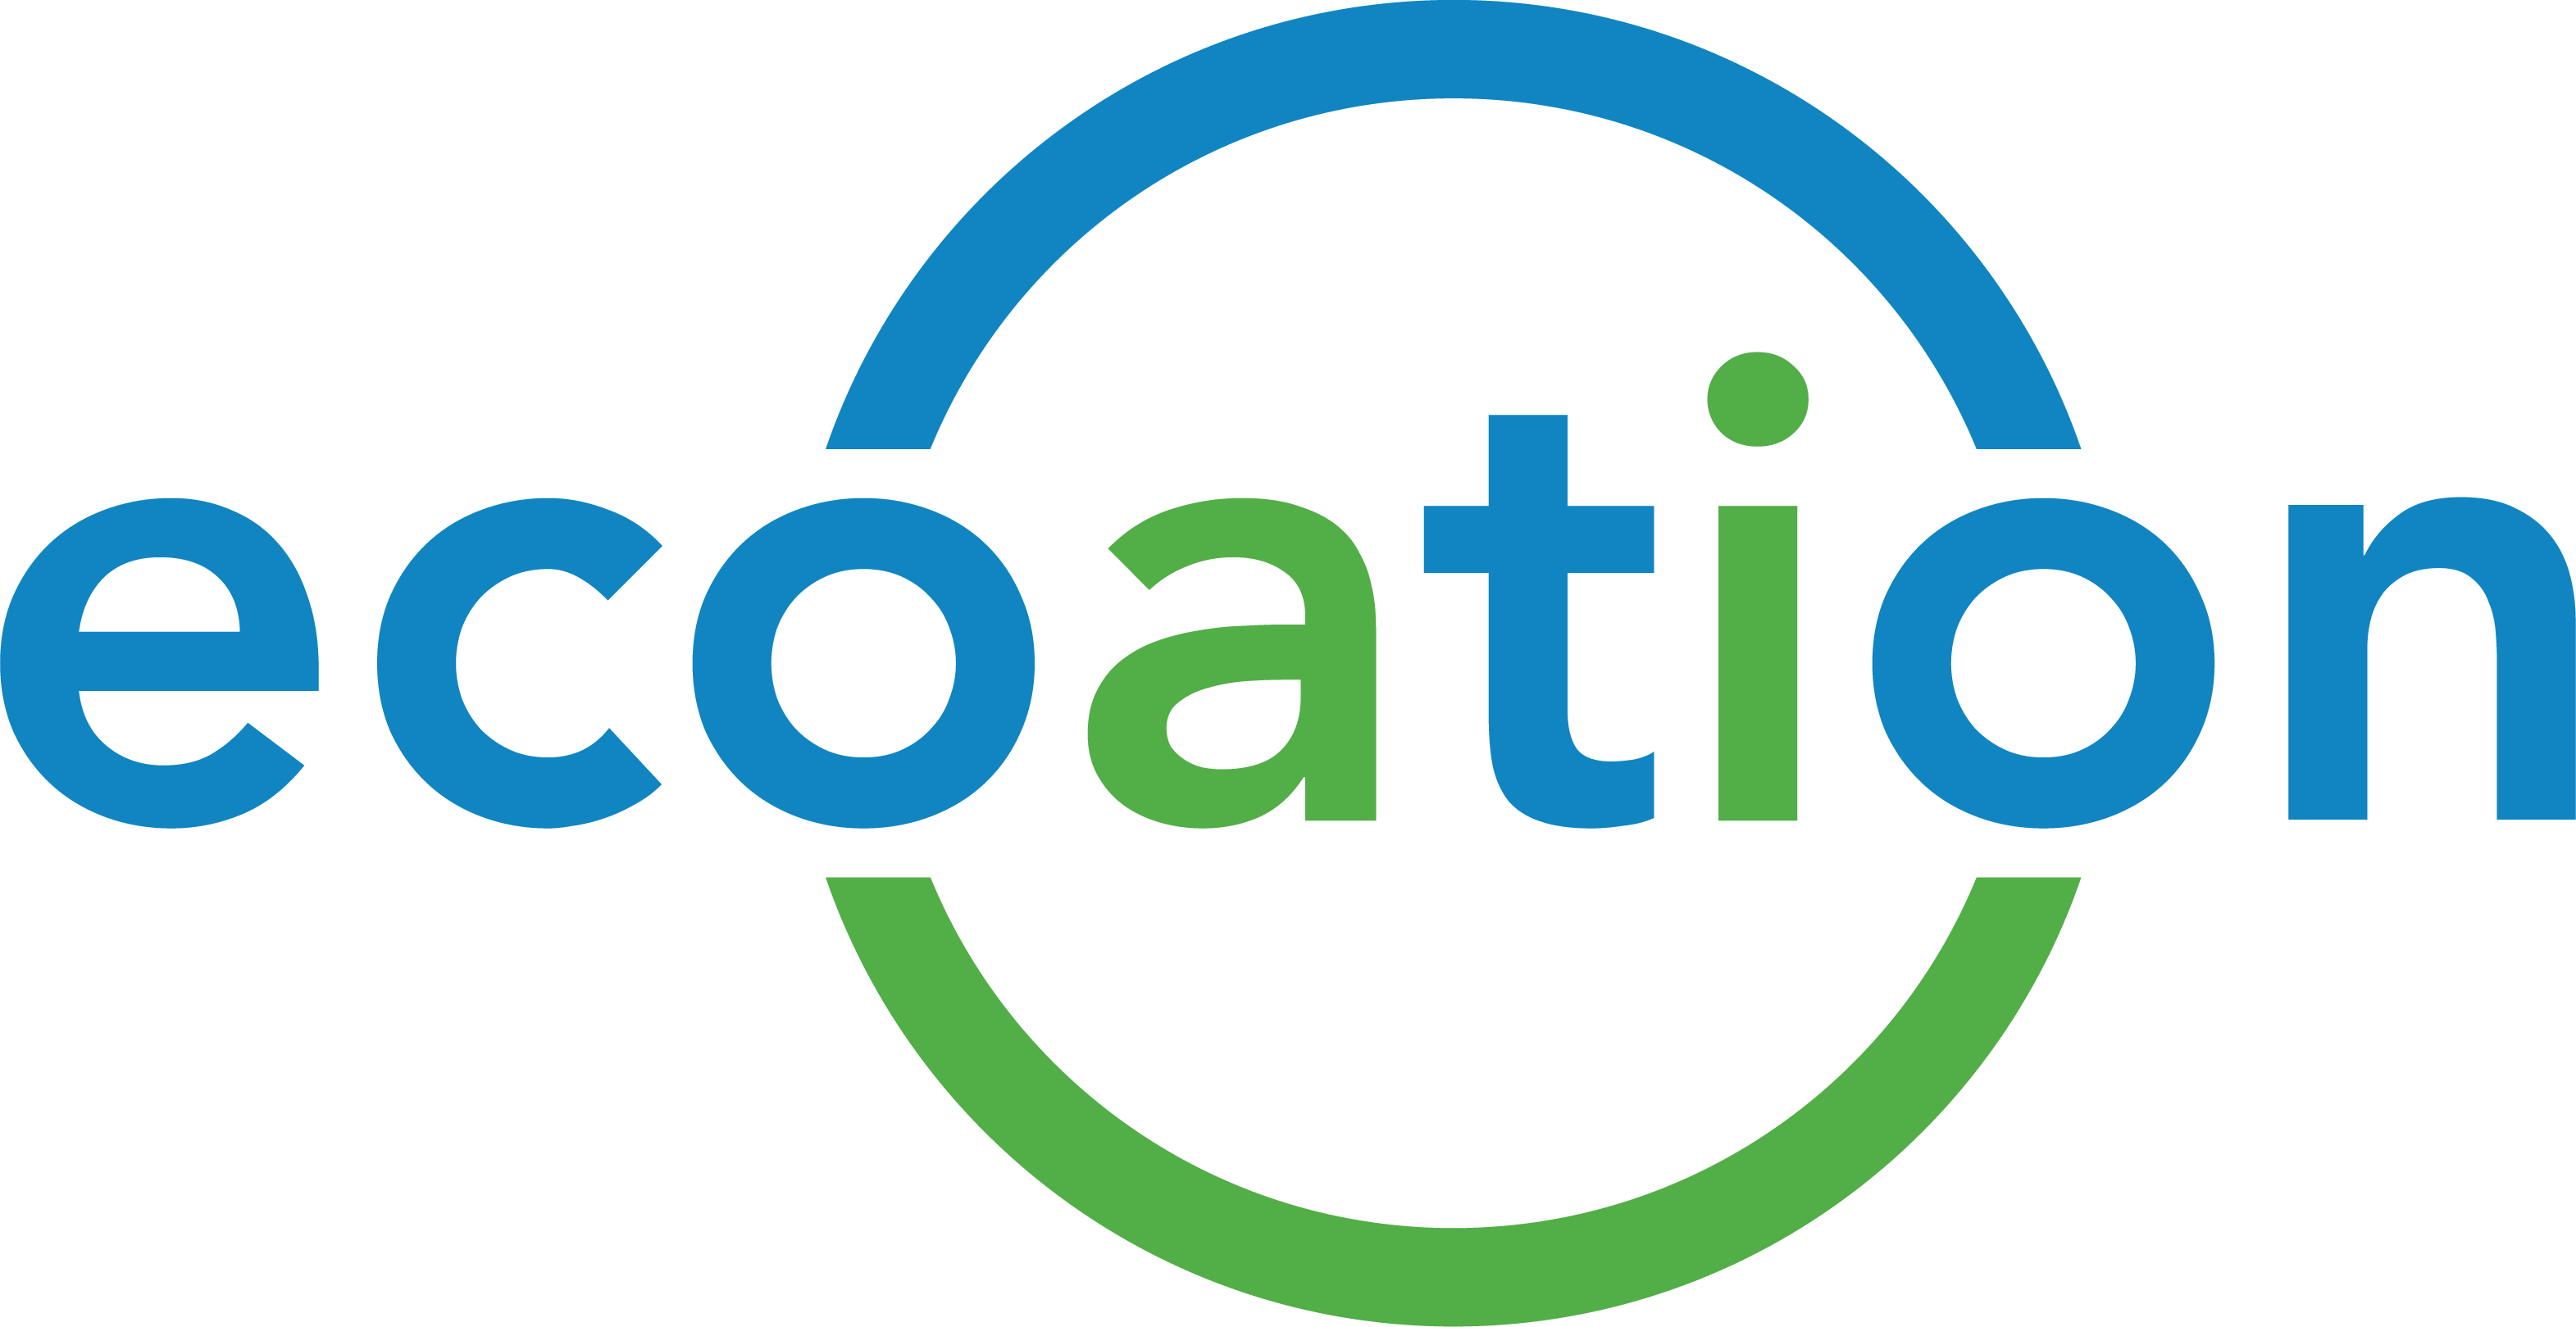 ecoation-logo